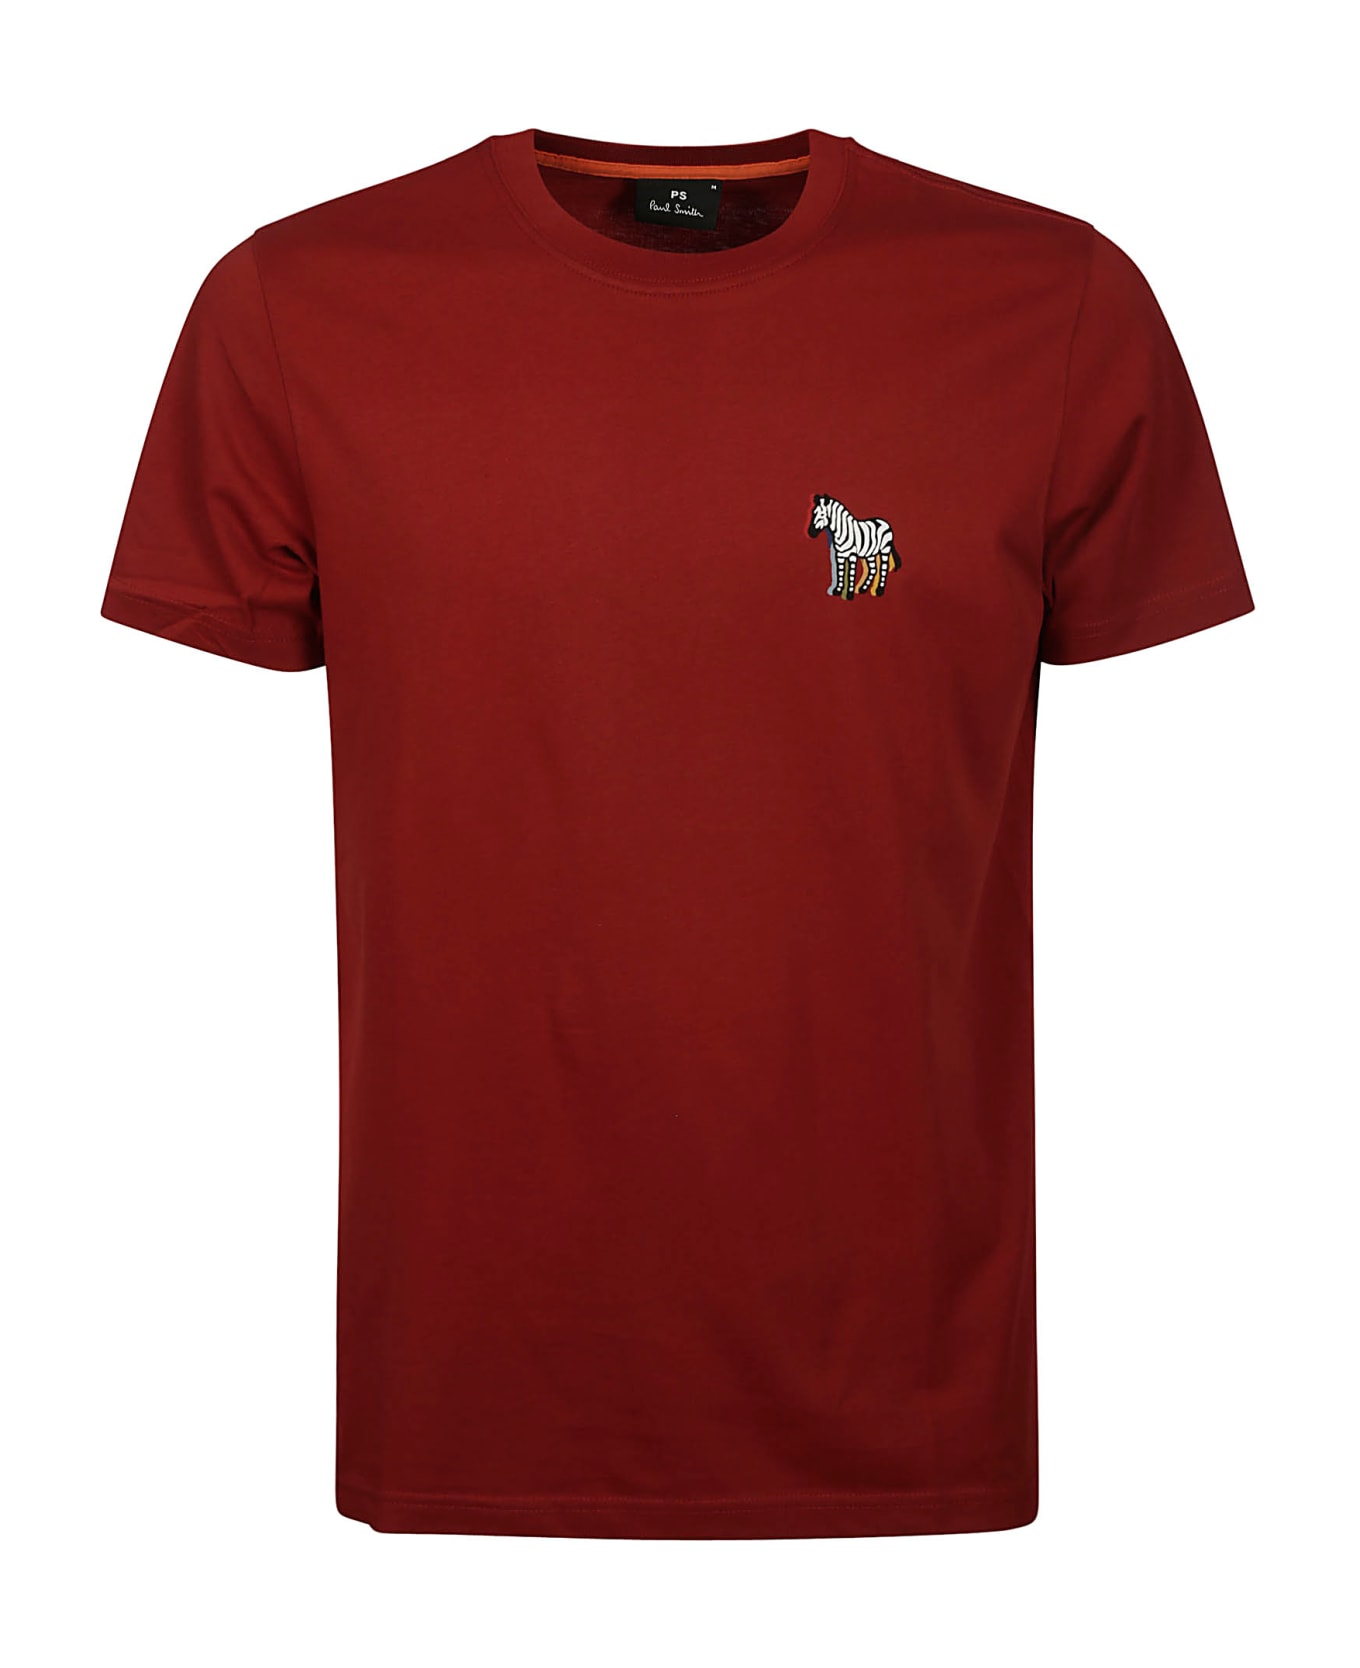 Paul Smith Slim Fit T-shirt B&w Zebra - A Blood